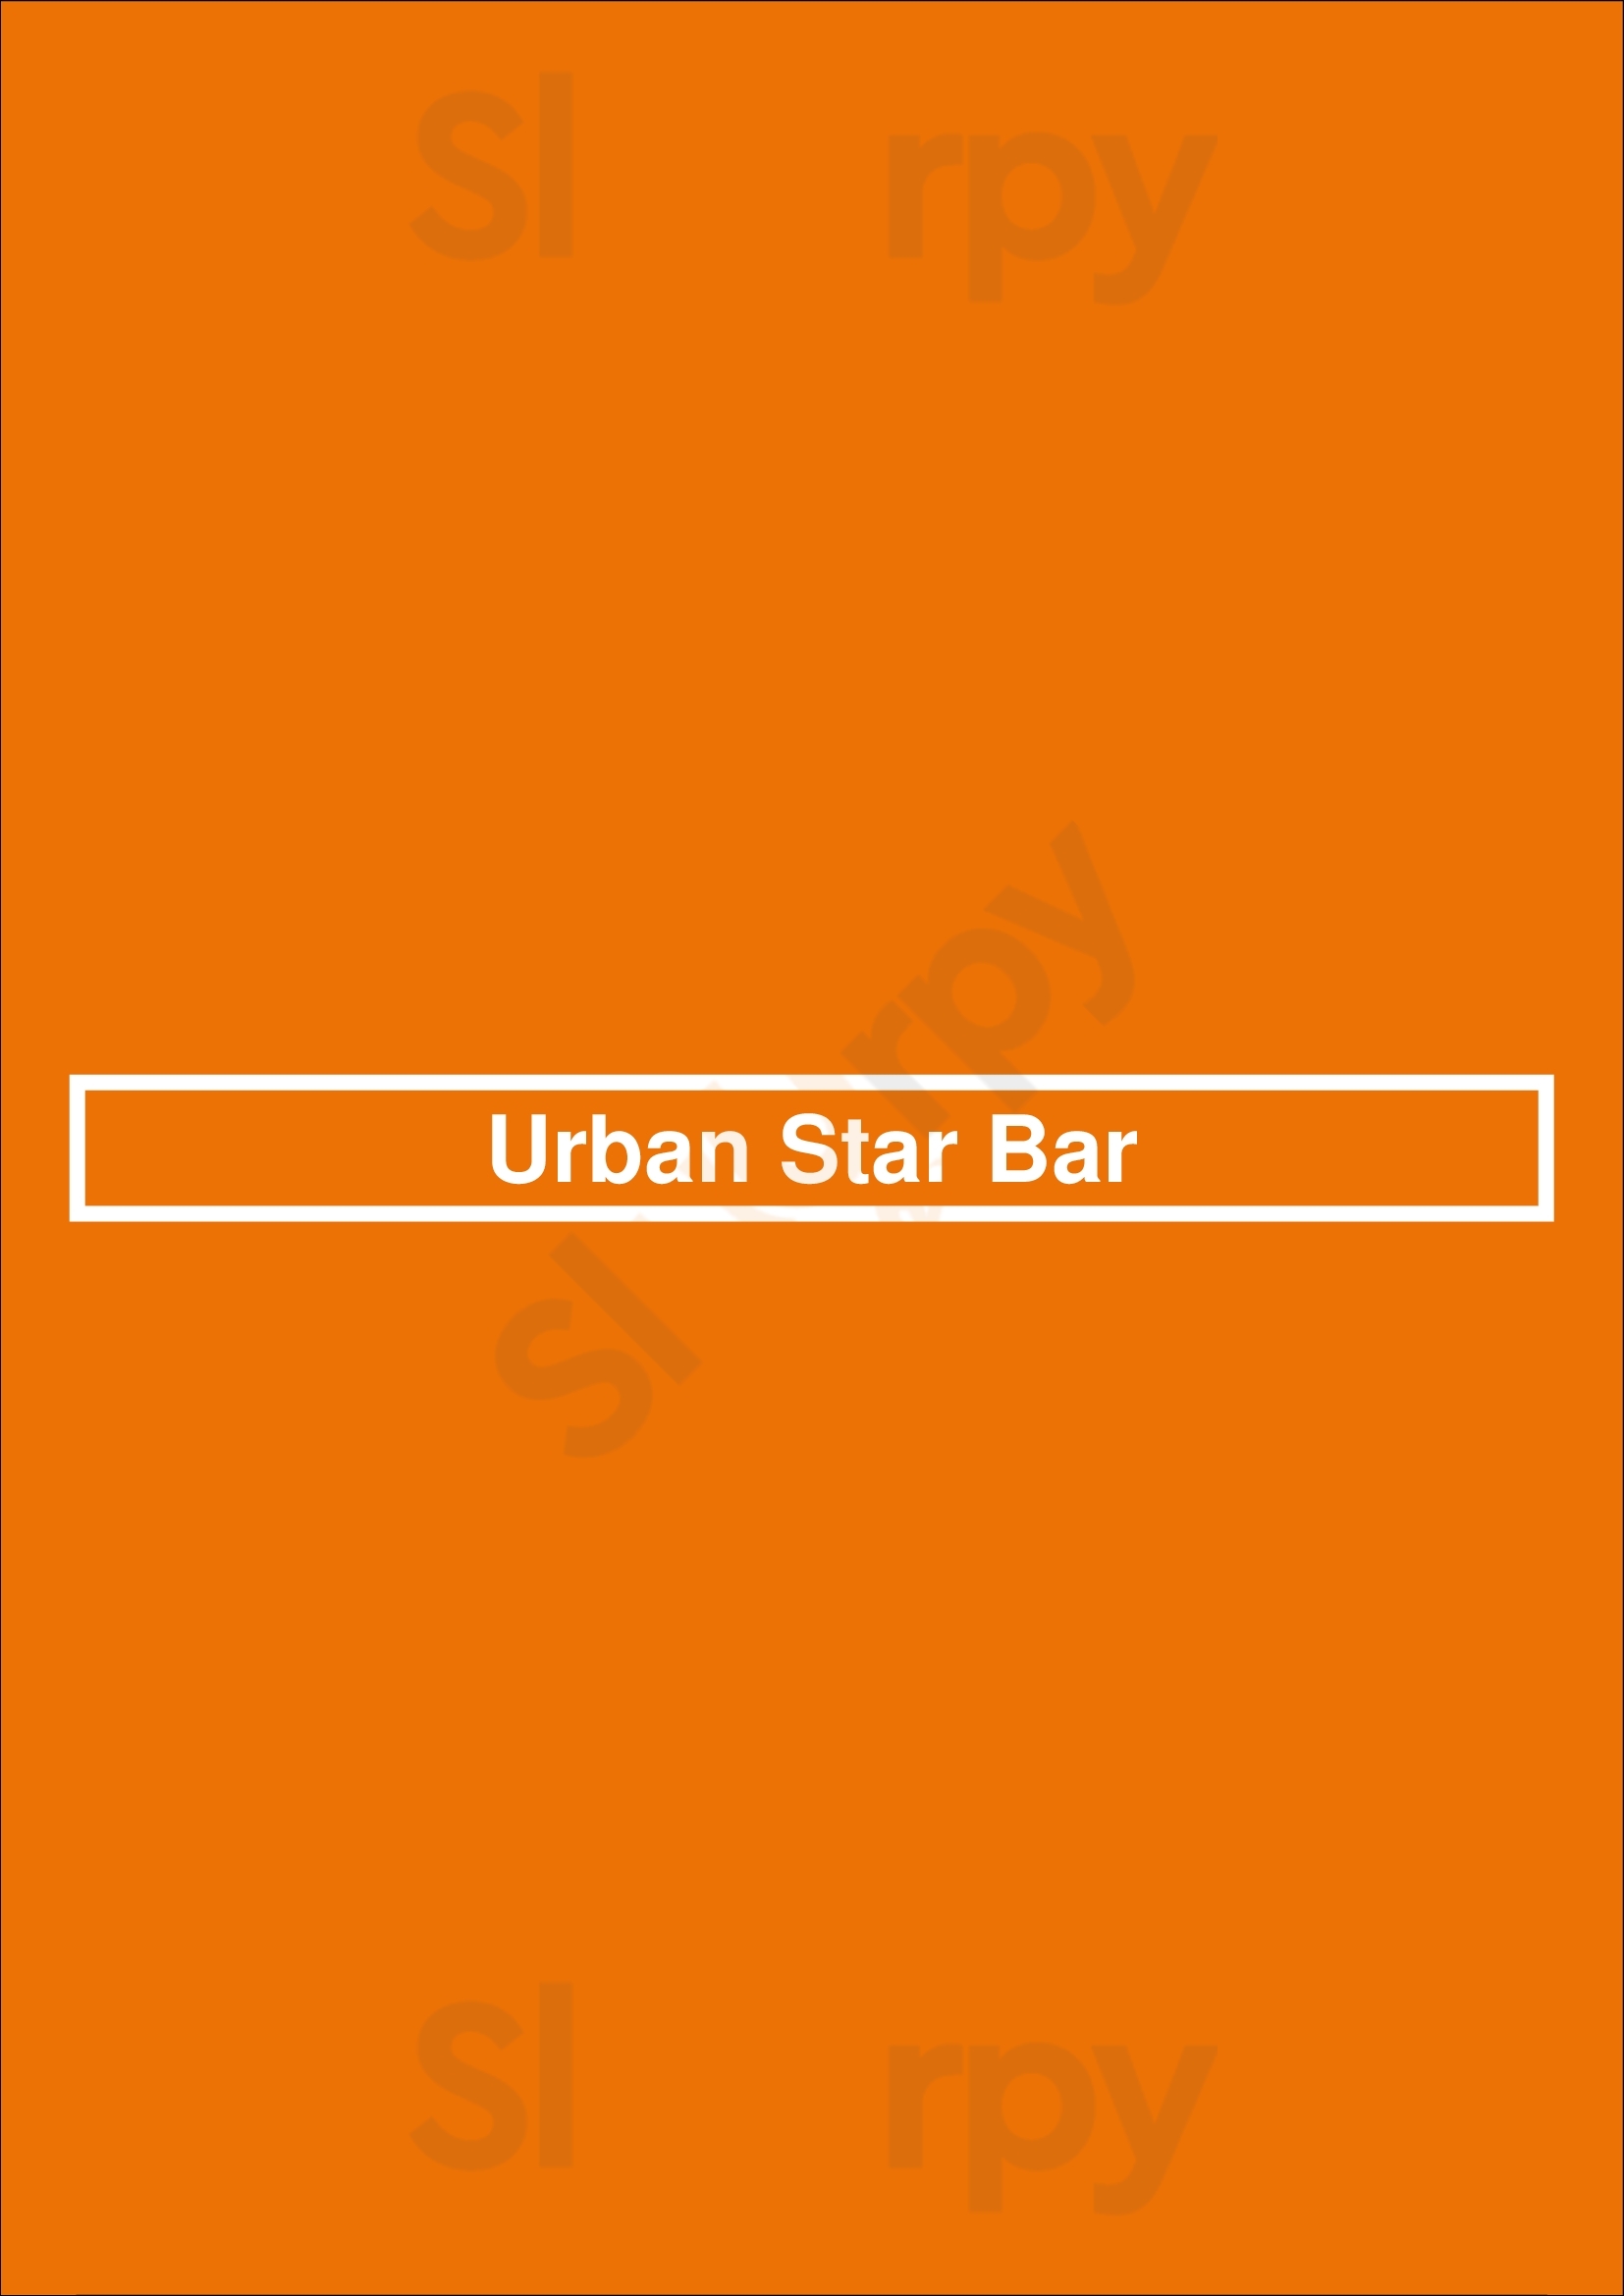 Urban Star Bar Houston Menu - 1